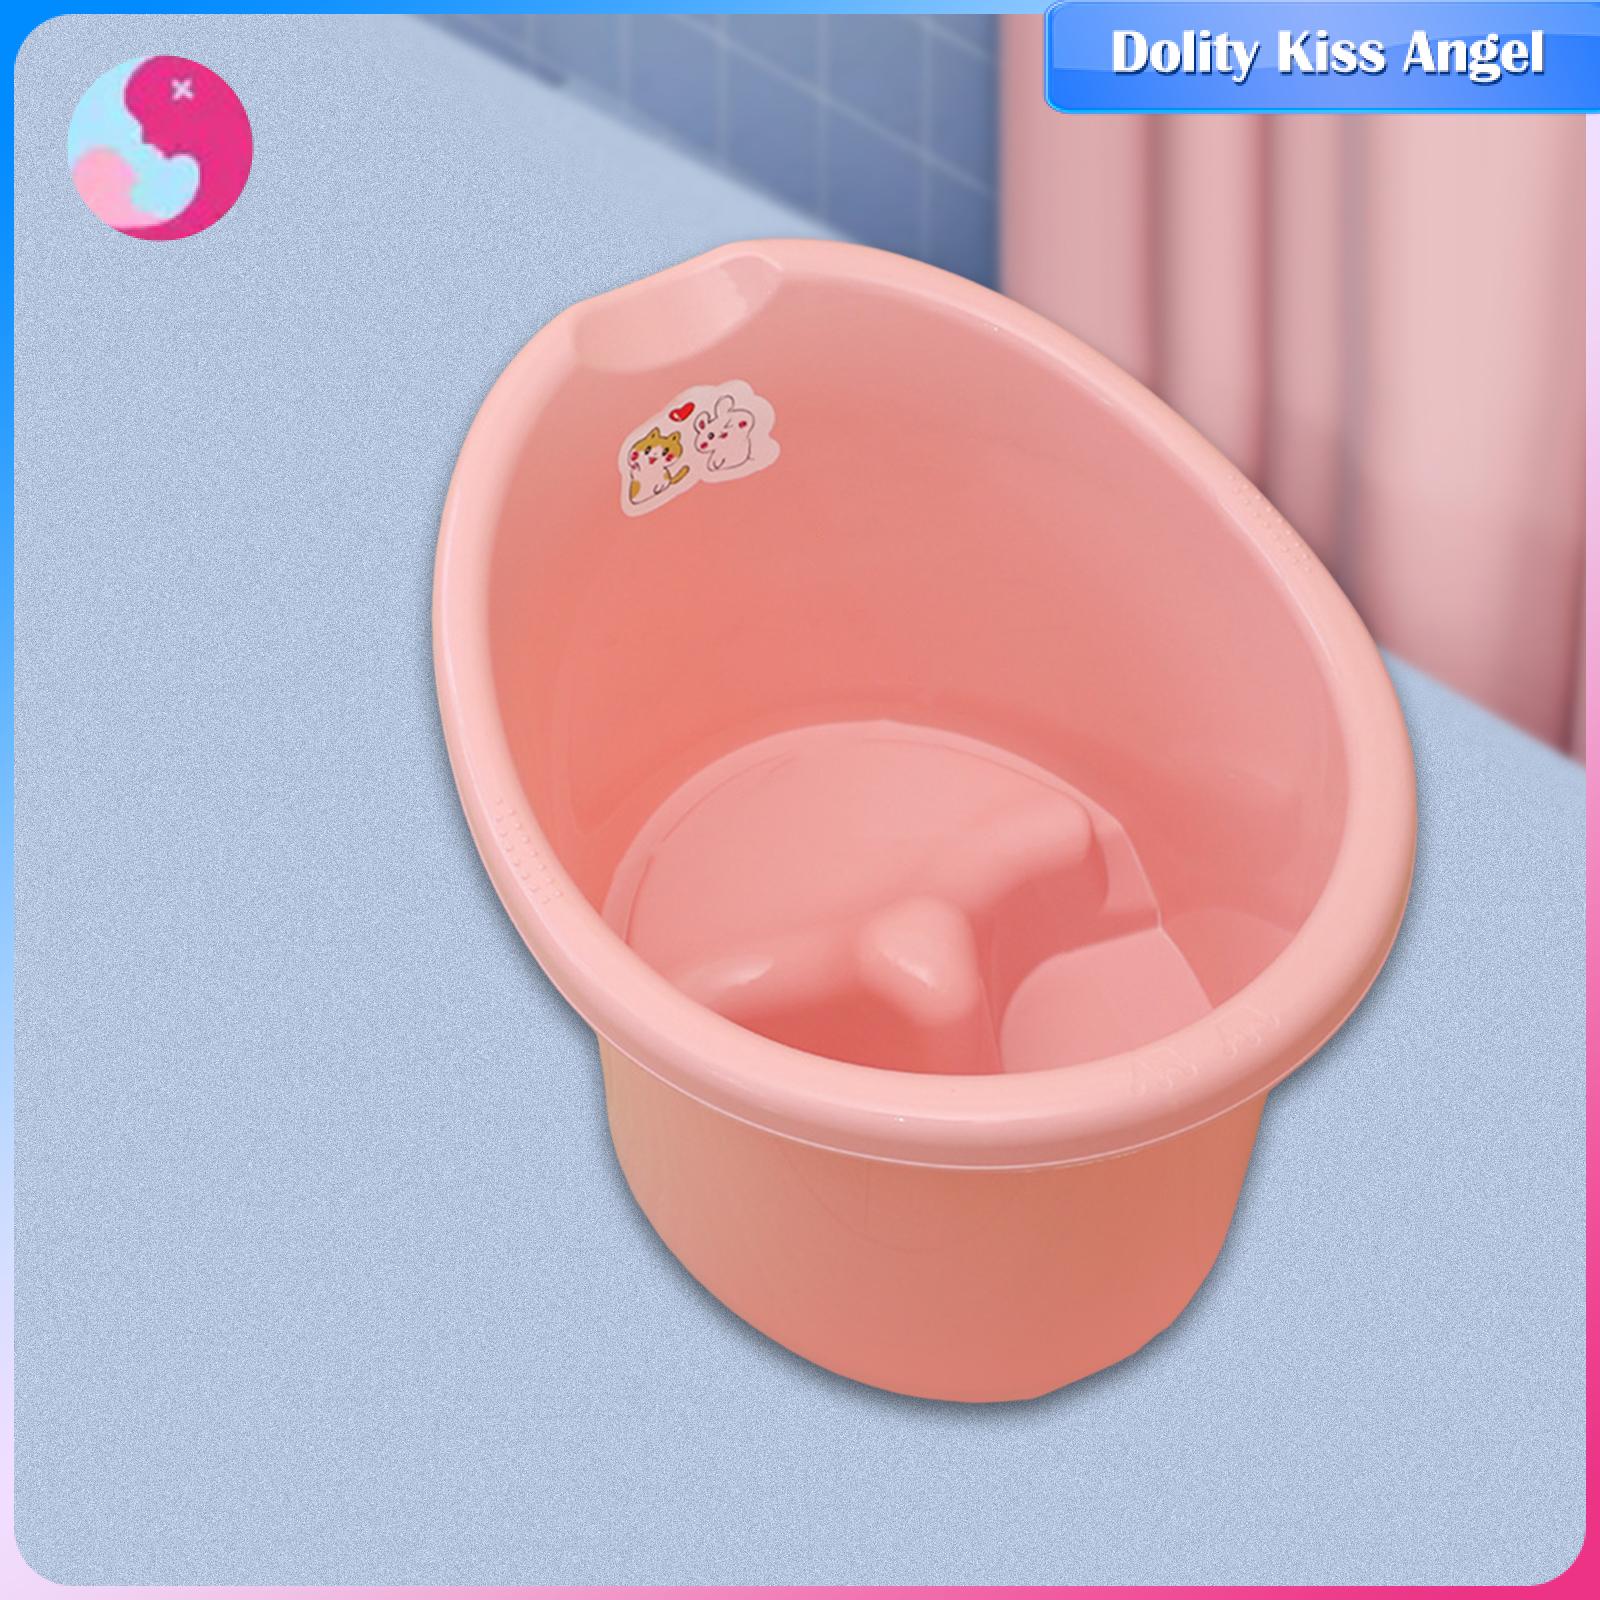 Dolity trẻ sơ sinh thùng tắm xách tay bồn tắm em bé cho trẻ sơ sinh bé trai và bé gái trẻ sơ sinh